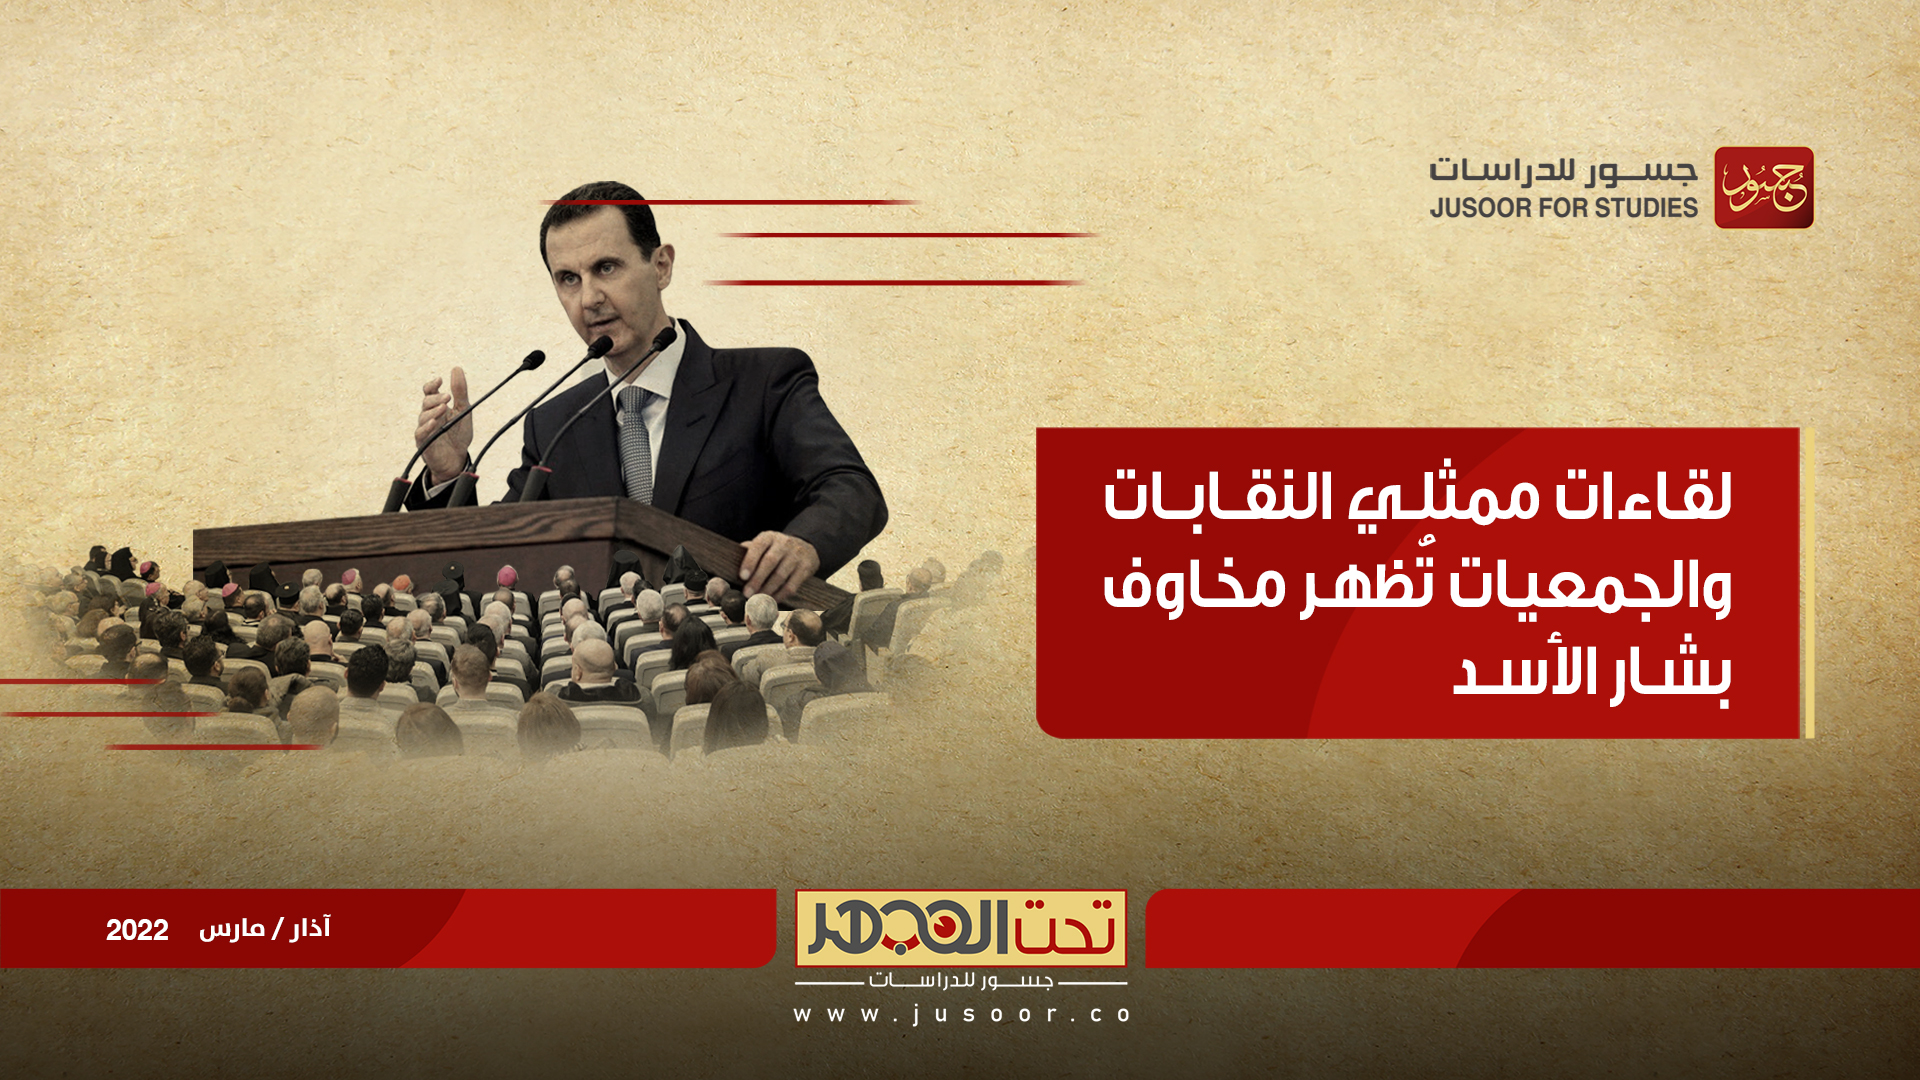 لقاءات ممثلي النقابات والجمعيات تُظهر مخاوف بشار الأسد